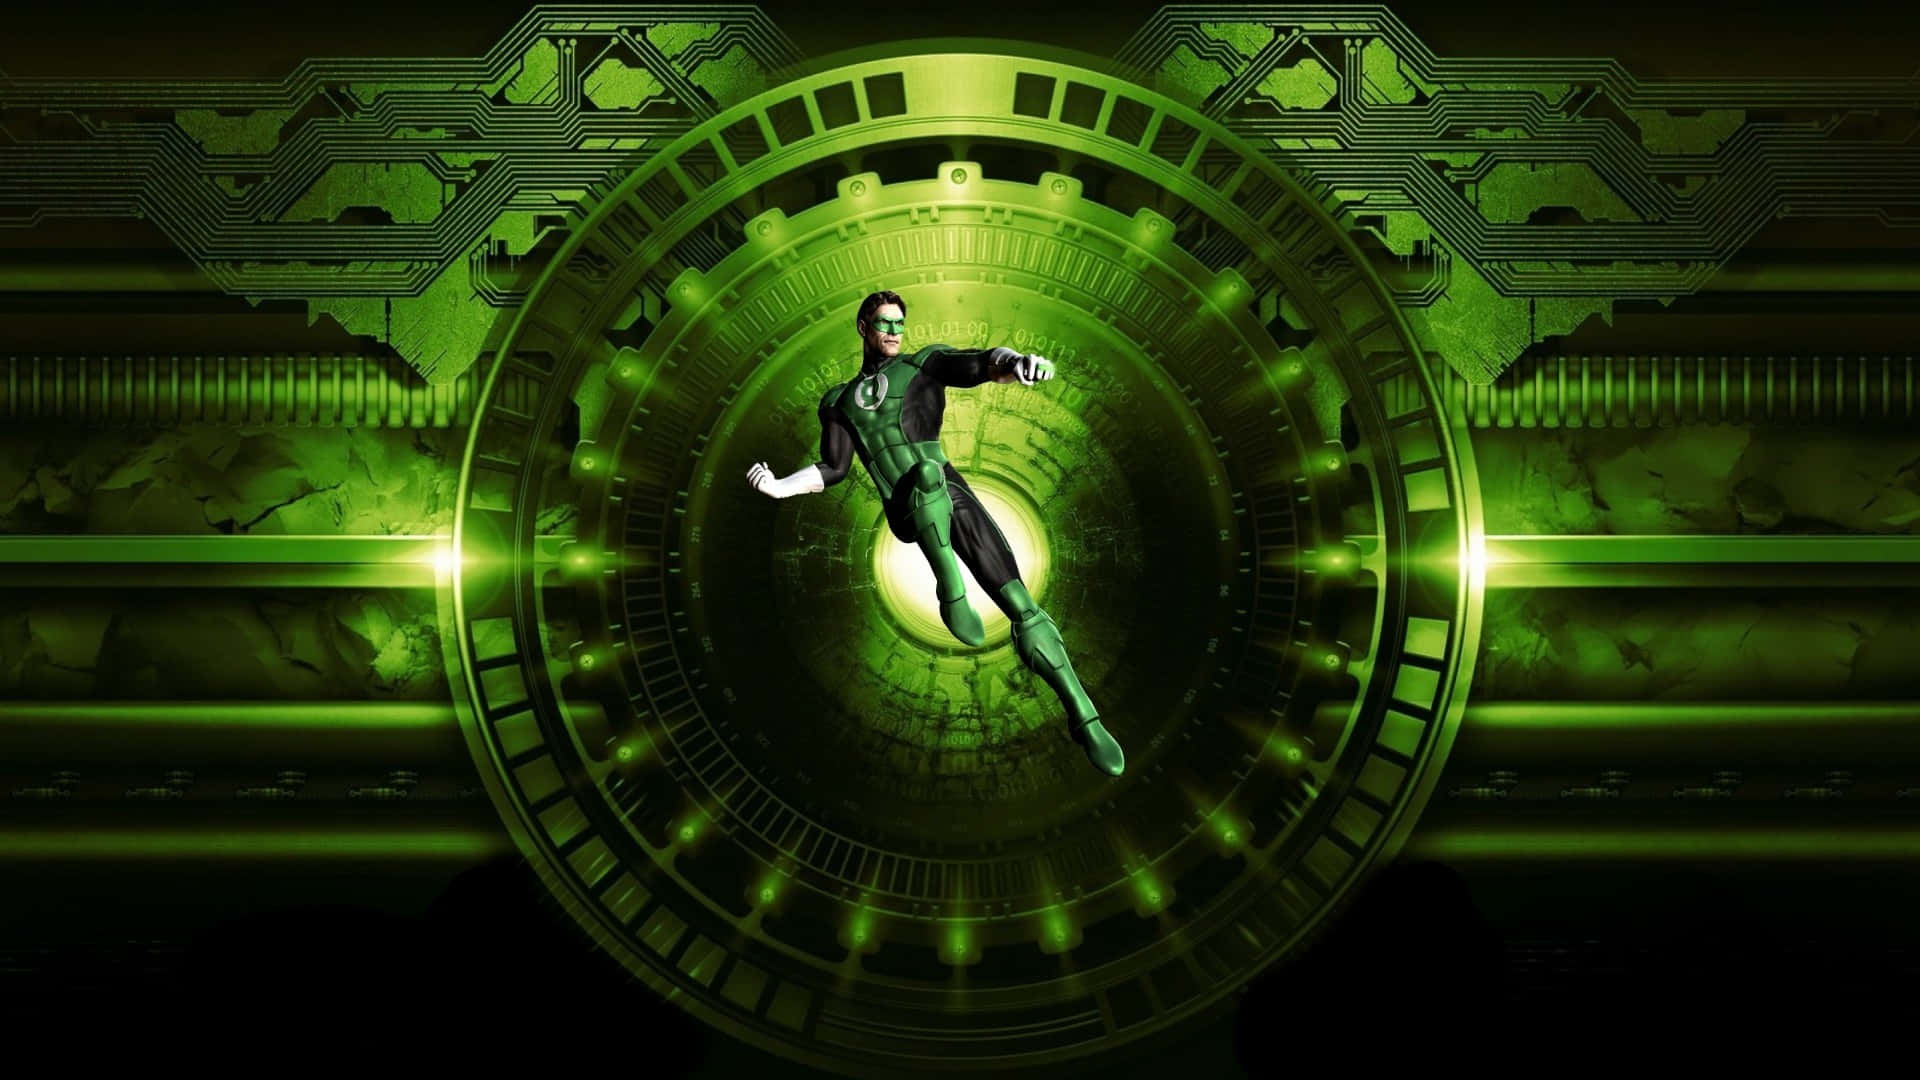 Hintergrundbildvon Green Lantern